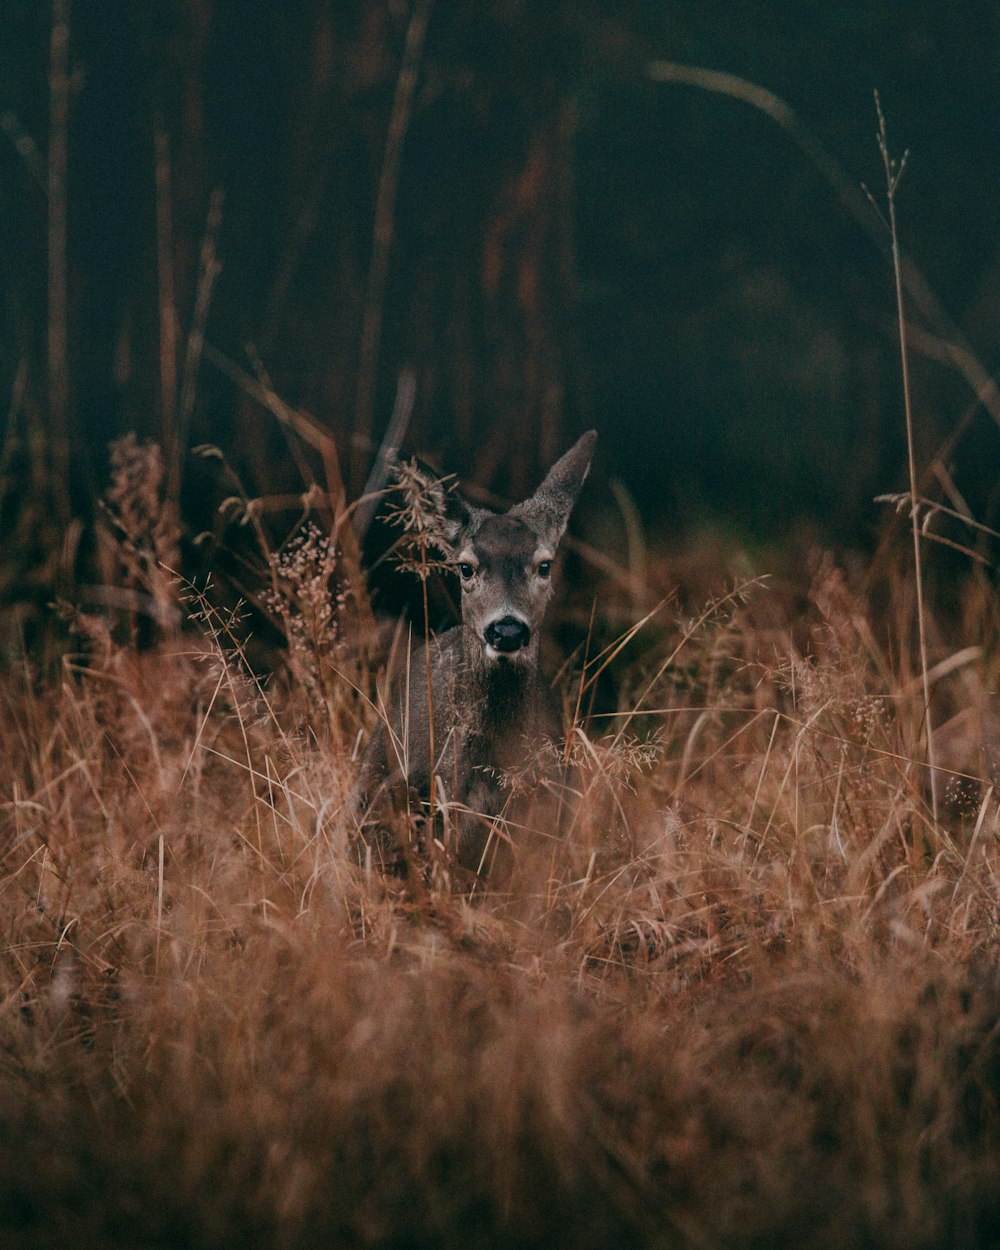 잔디로 둘러싸인 회색 사슴의 야생 동물 사진